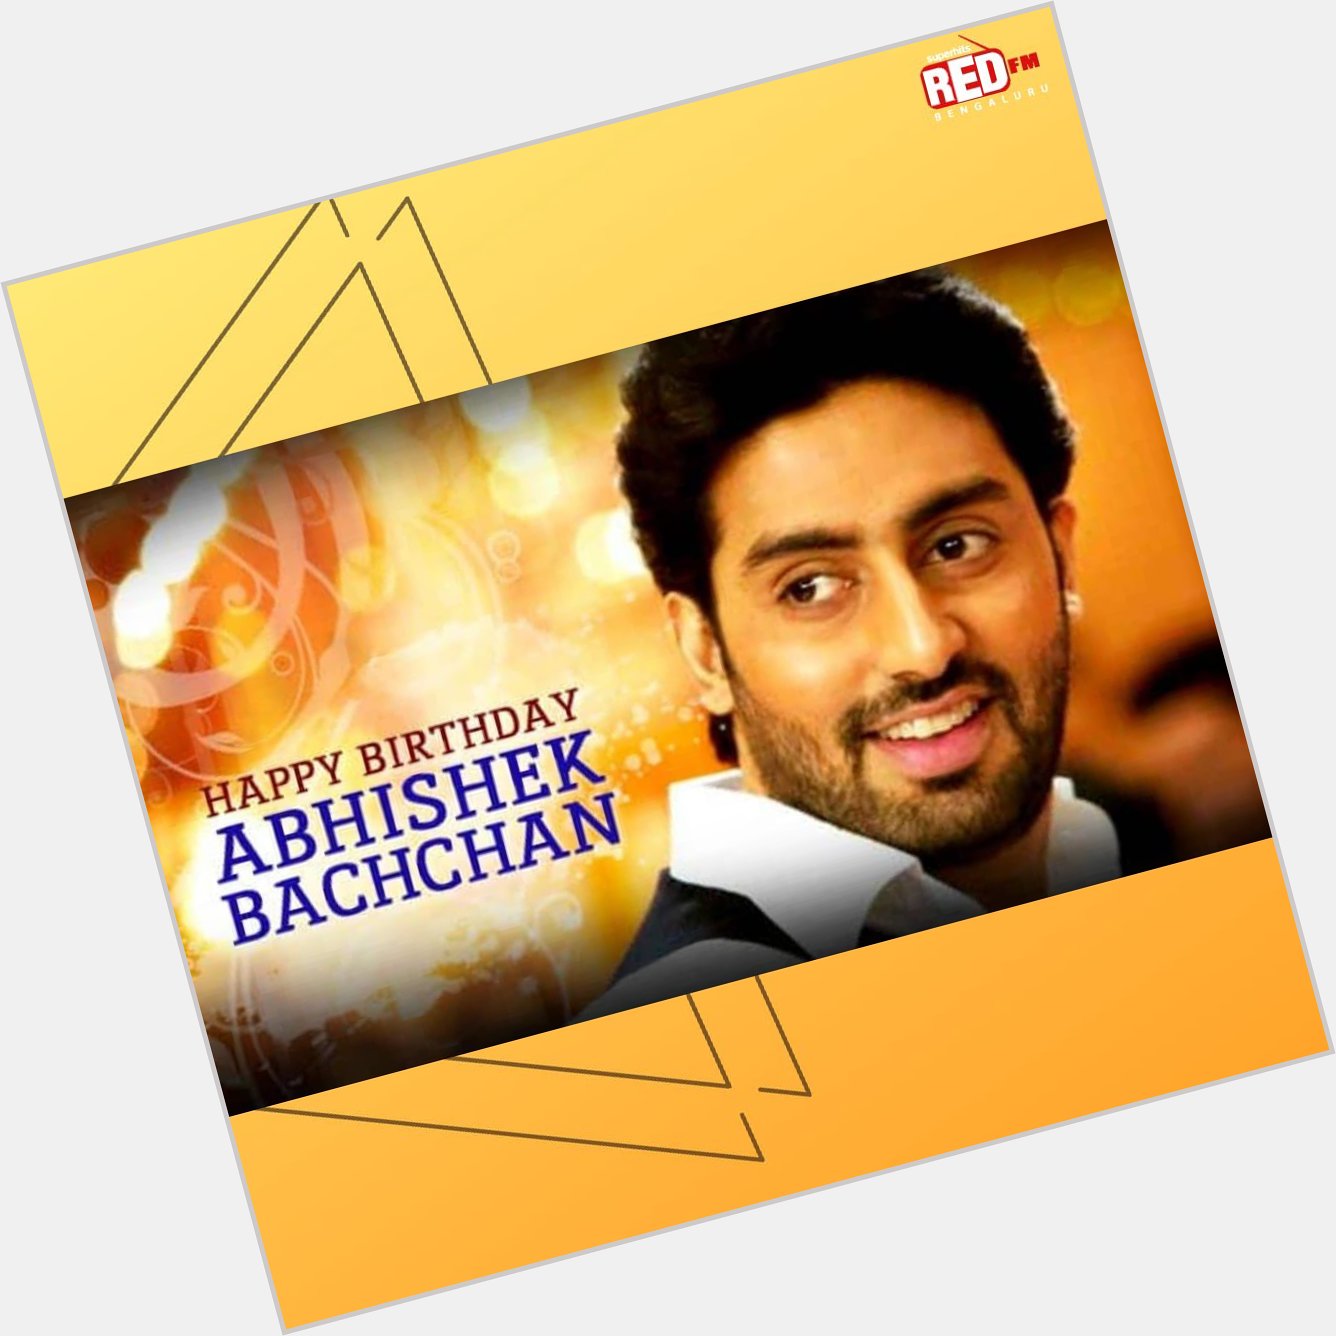 Happy Birthday Abhishek Bachchan.   